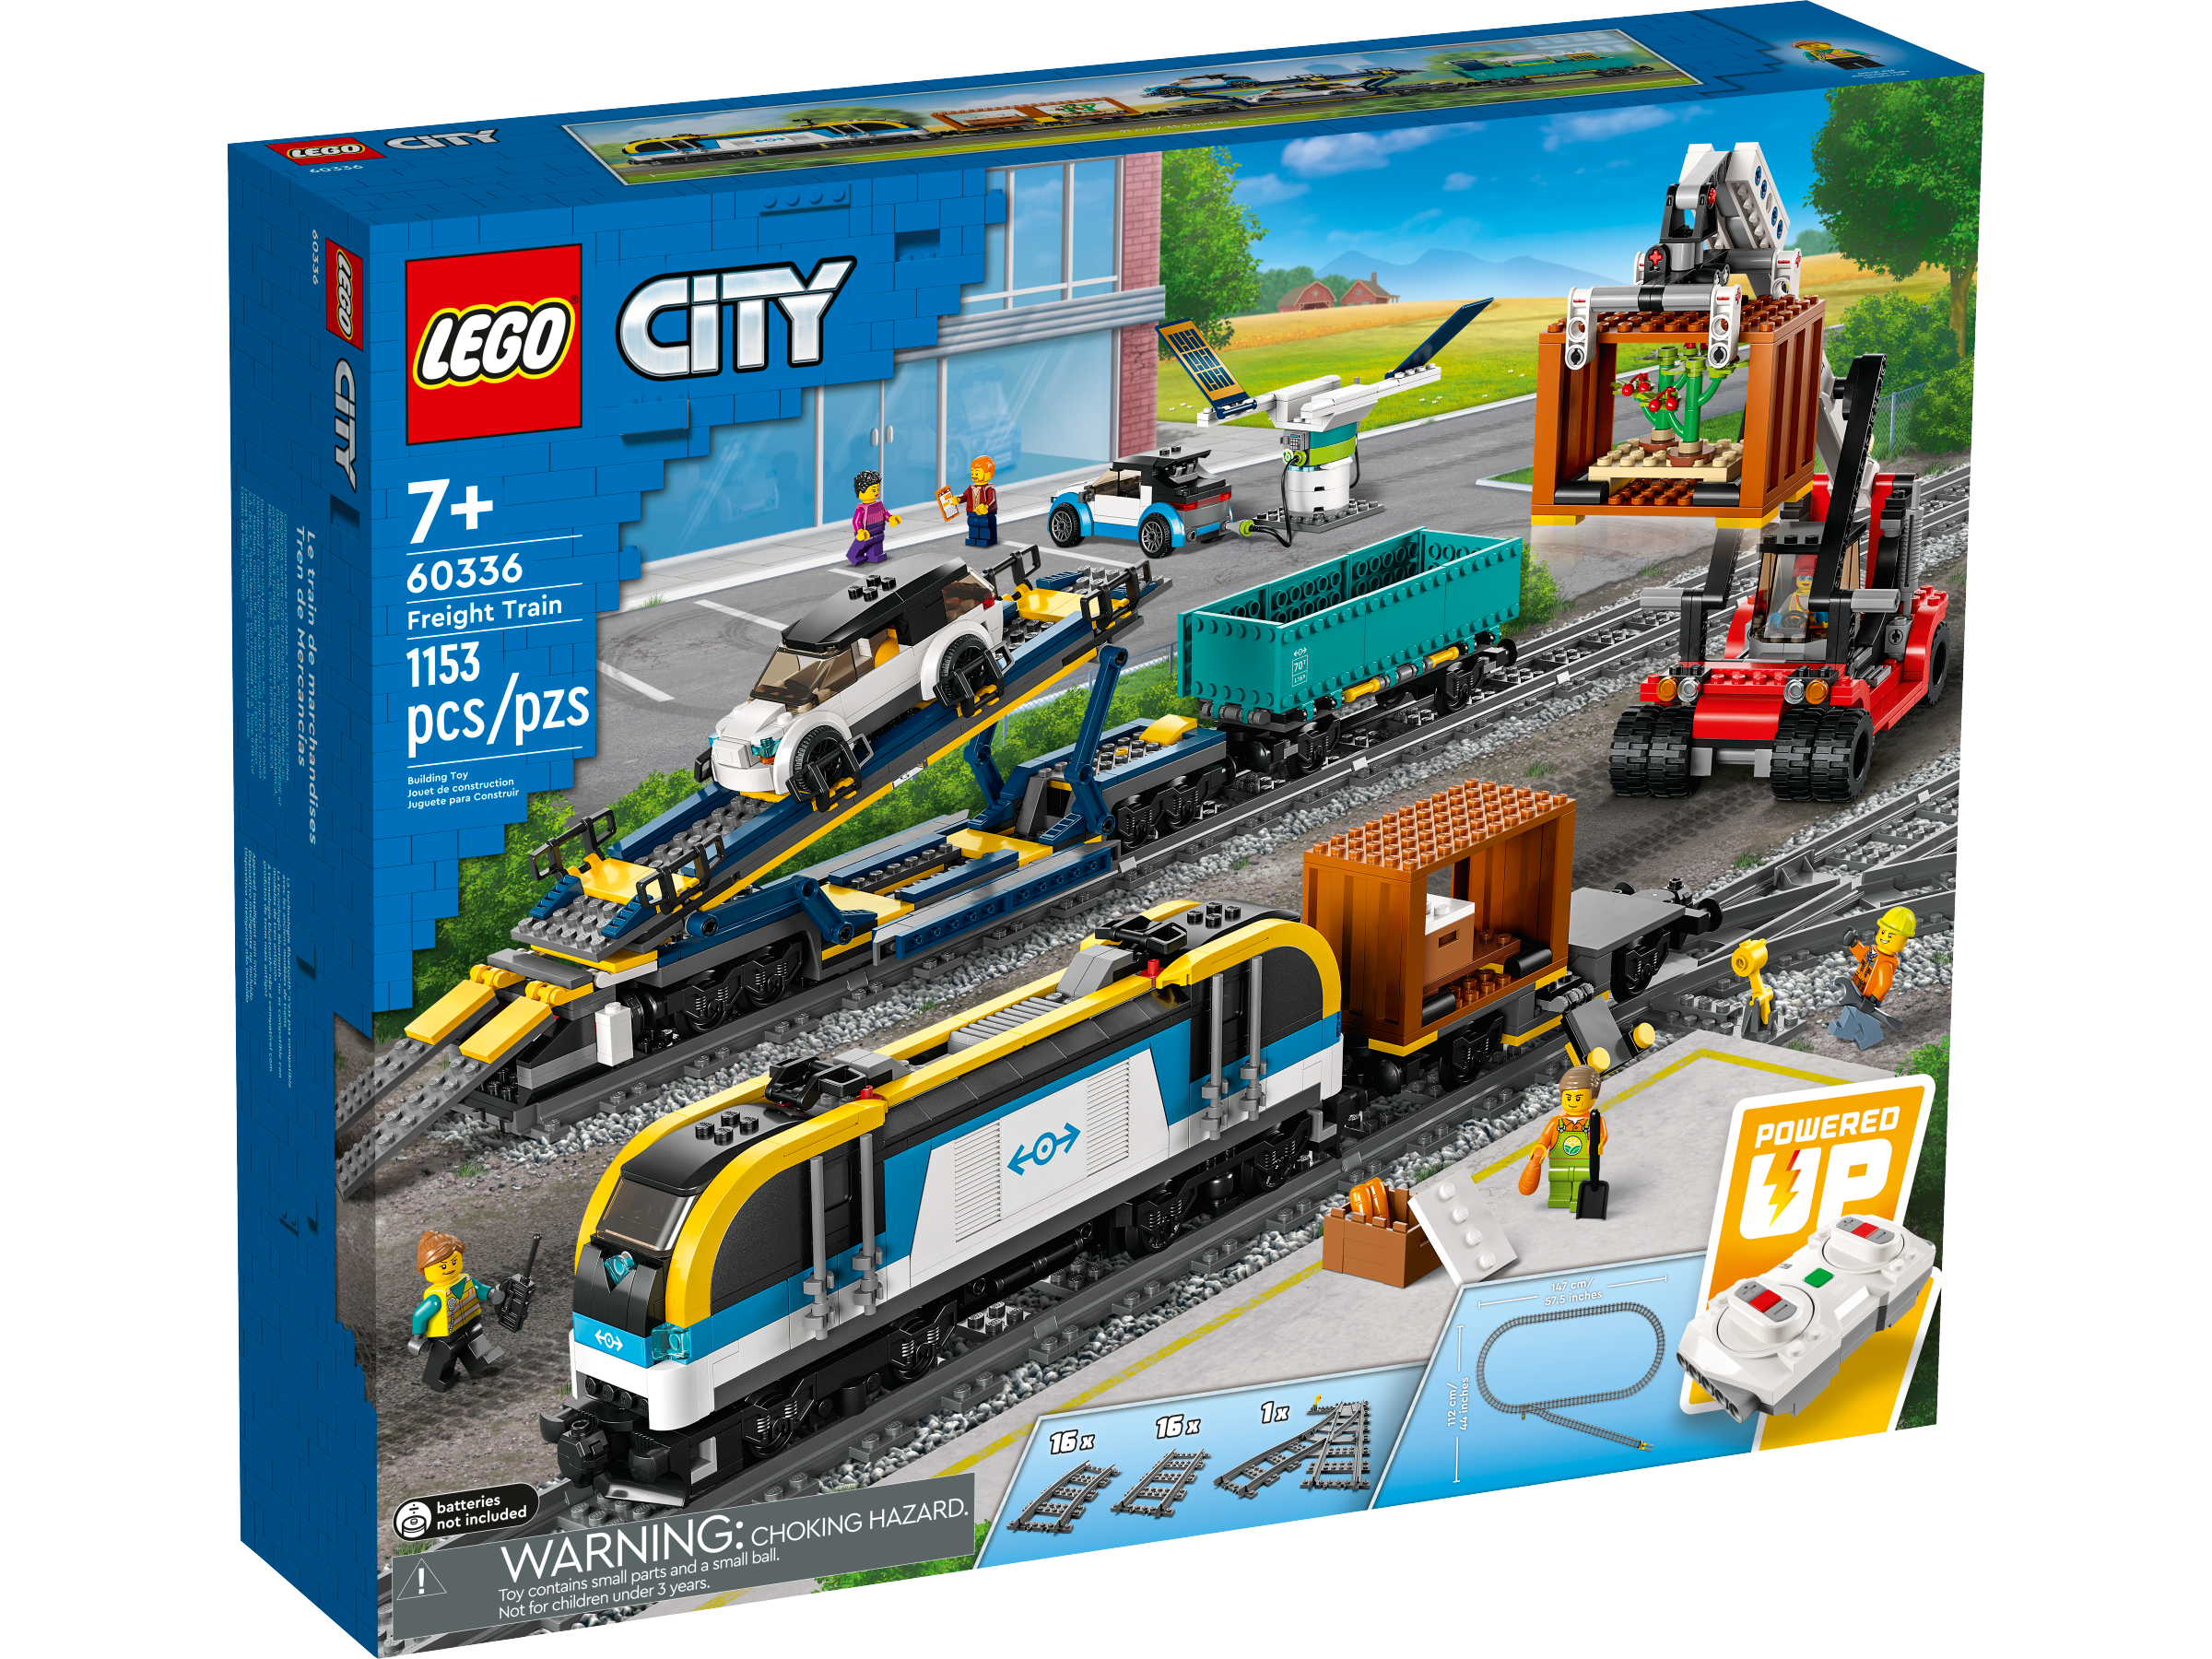 LEGO 60198 - Le train de marchandises télécommandé - boite neuve